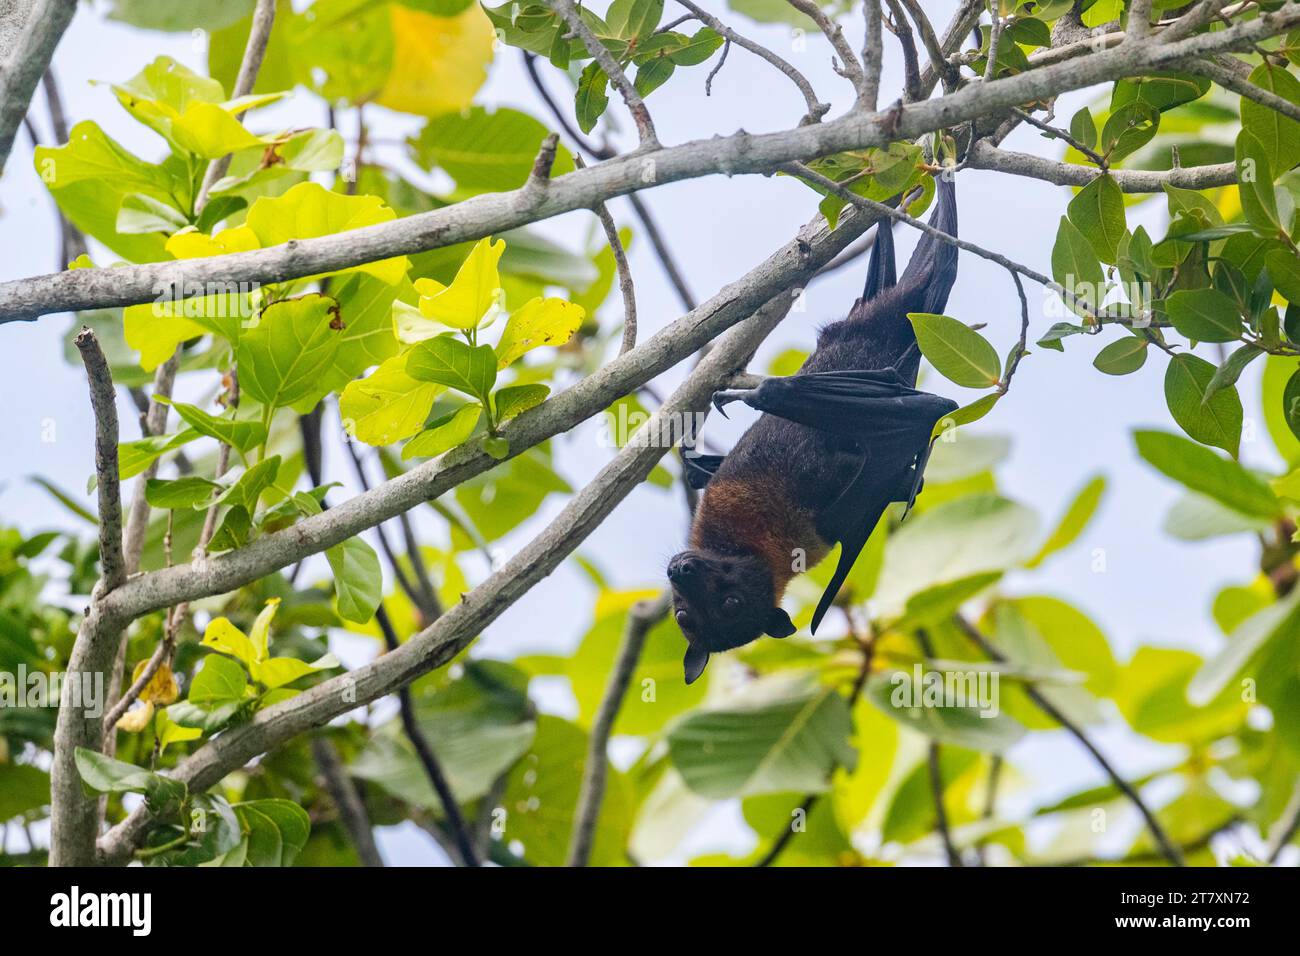 Pipistrello da frutta comune con becco tubolare (Nyctimene albiventer), che si aggira su Pulau Panaki, Raja Ampat, Indonesia, Sud-est asiatico, Asia Foto Stock